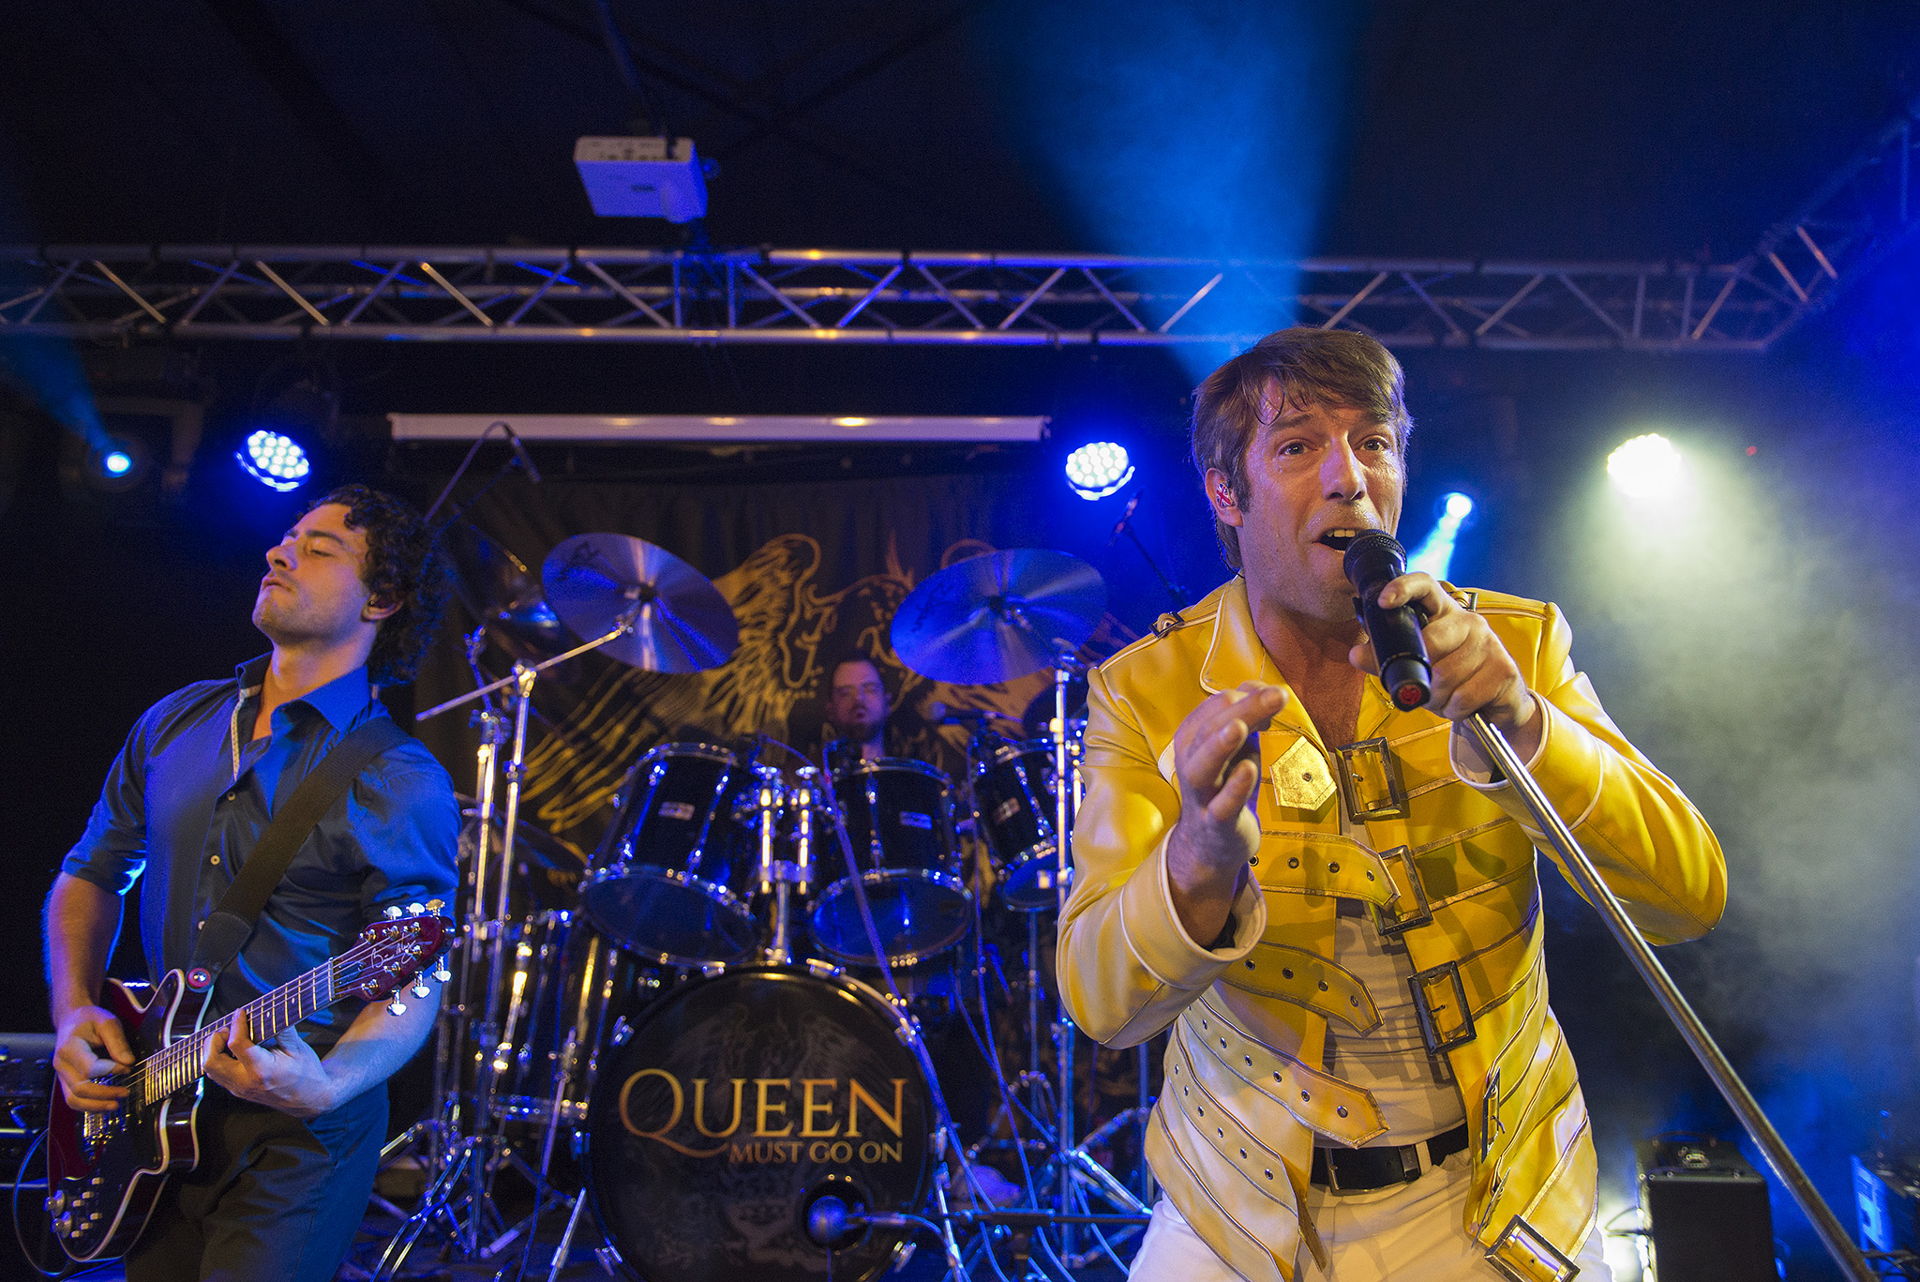 Queen must go on op 8 april in Het Podium, foto's door Wijnand Krikke